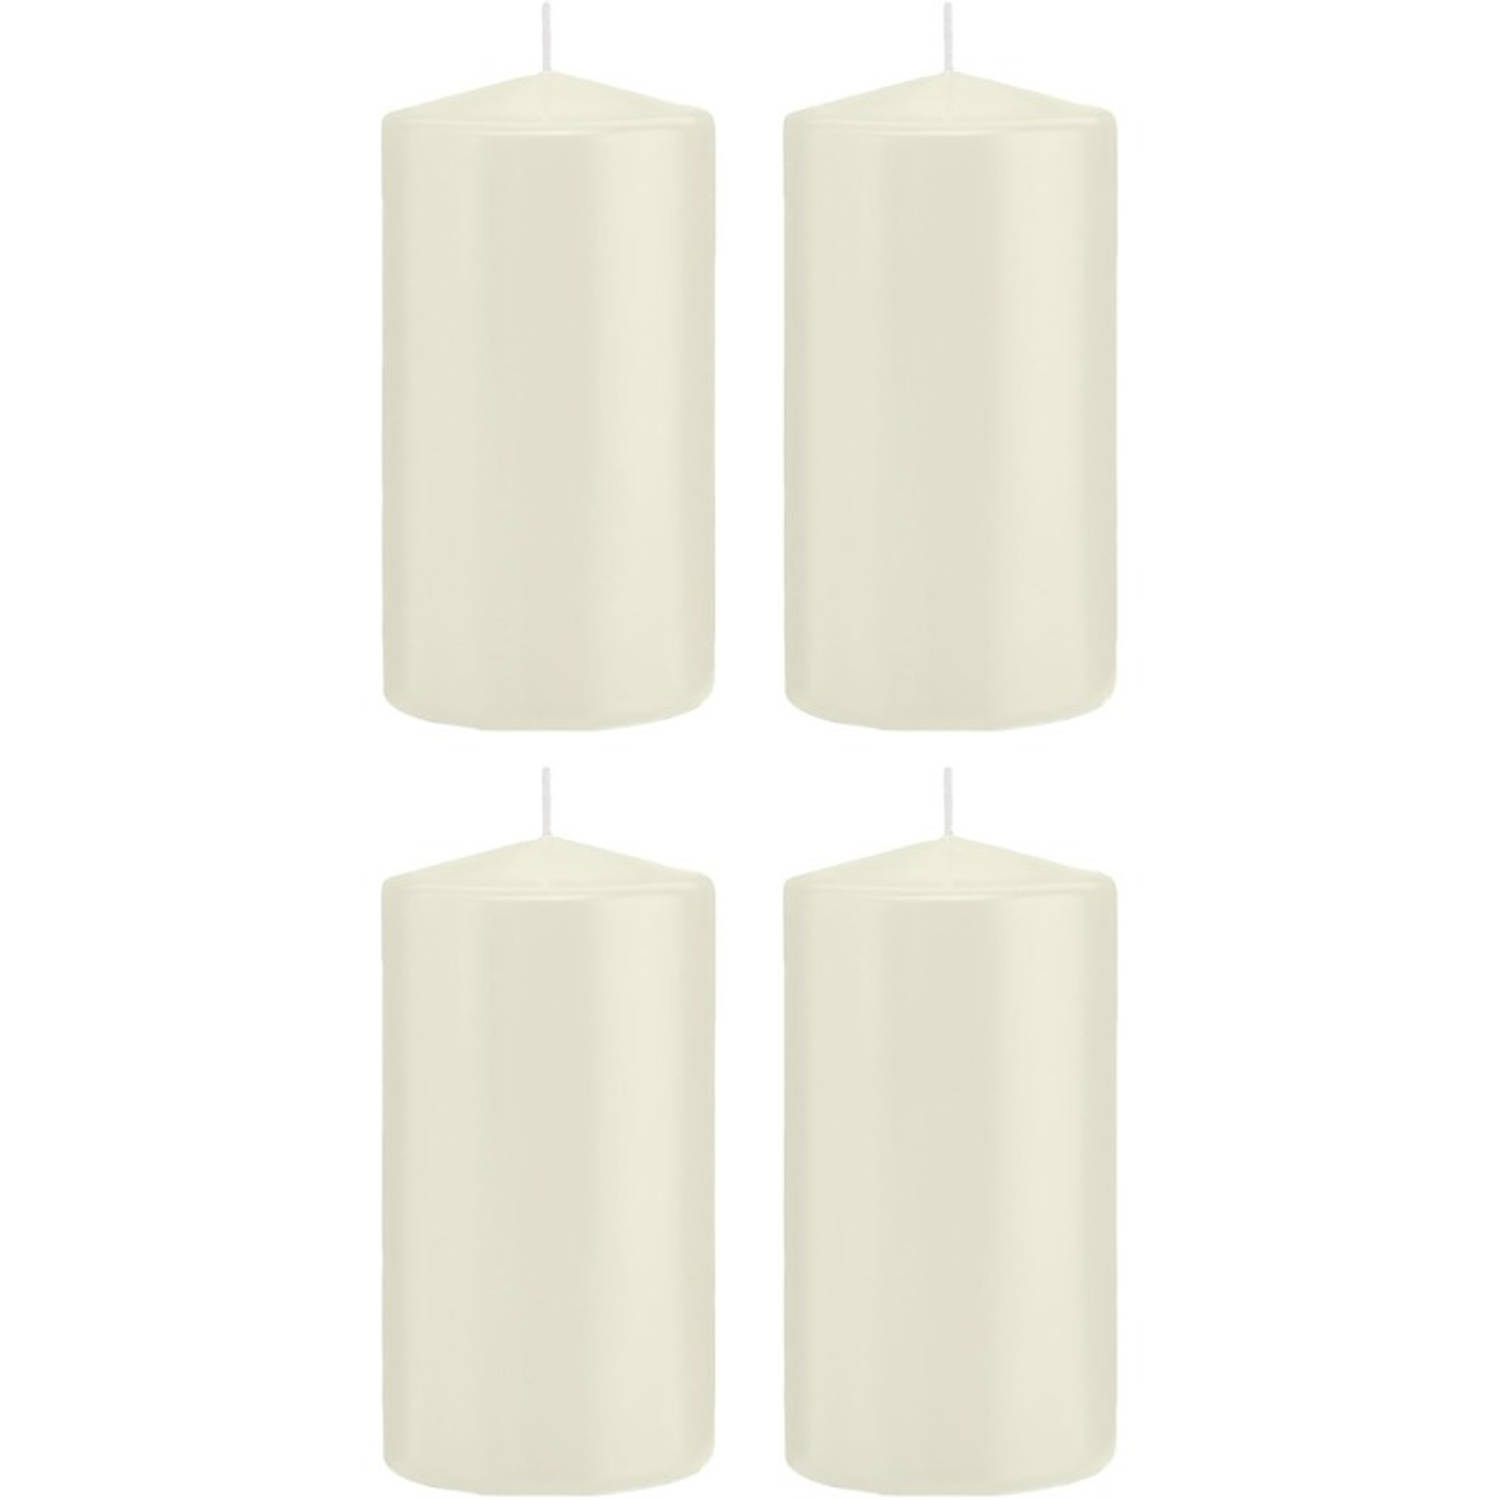 Trend Candles 4x Ivoorte Cilinderkaarsen/stompkaarsen 8 X 15 Cm 69 Branduren - Geurloze Kaarsen - Woondecoraties - Wit